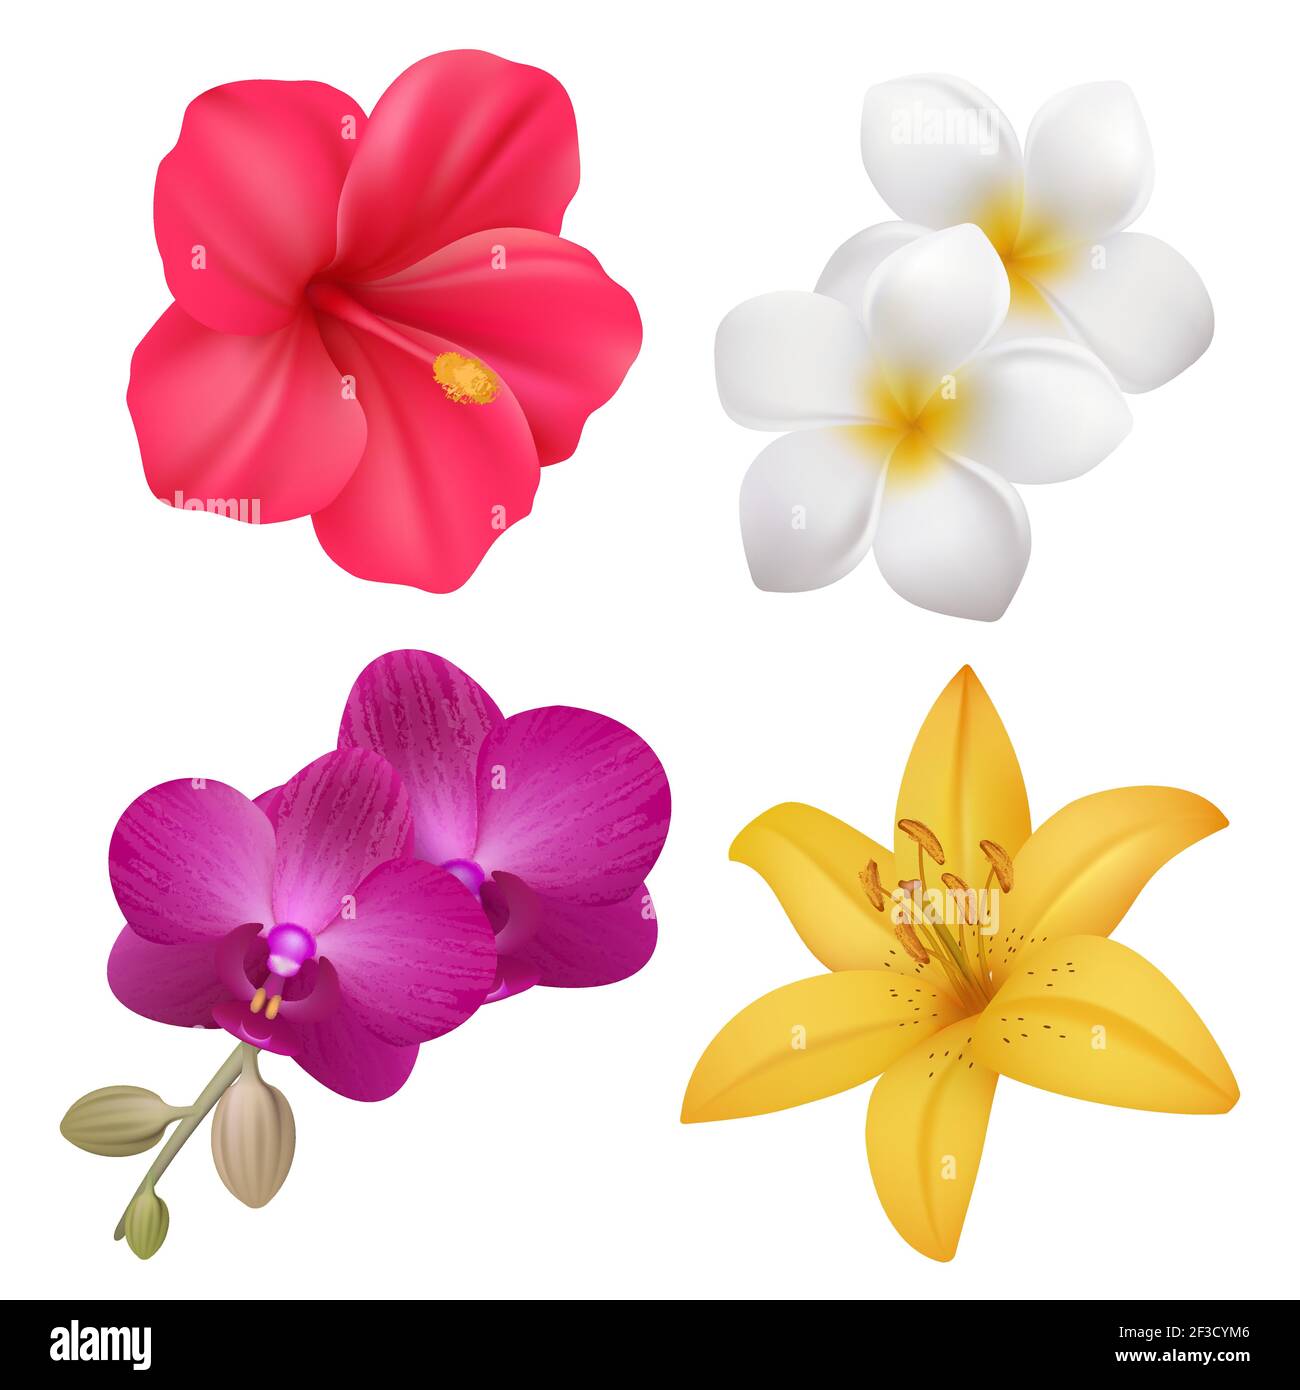 Tropische Blumen. Exotische Natur Pflanzen floral realistische Sammlung von polynesischen Vektor-Blumen Stock Vektor